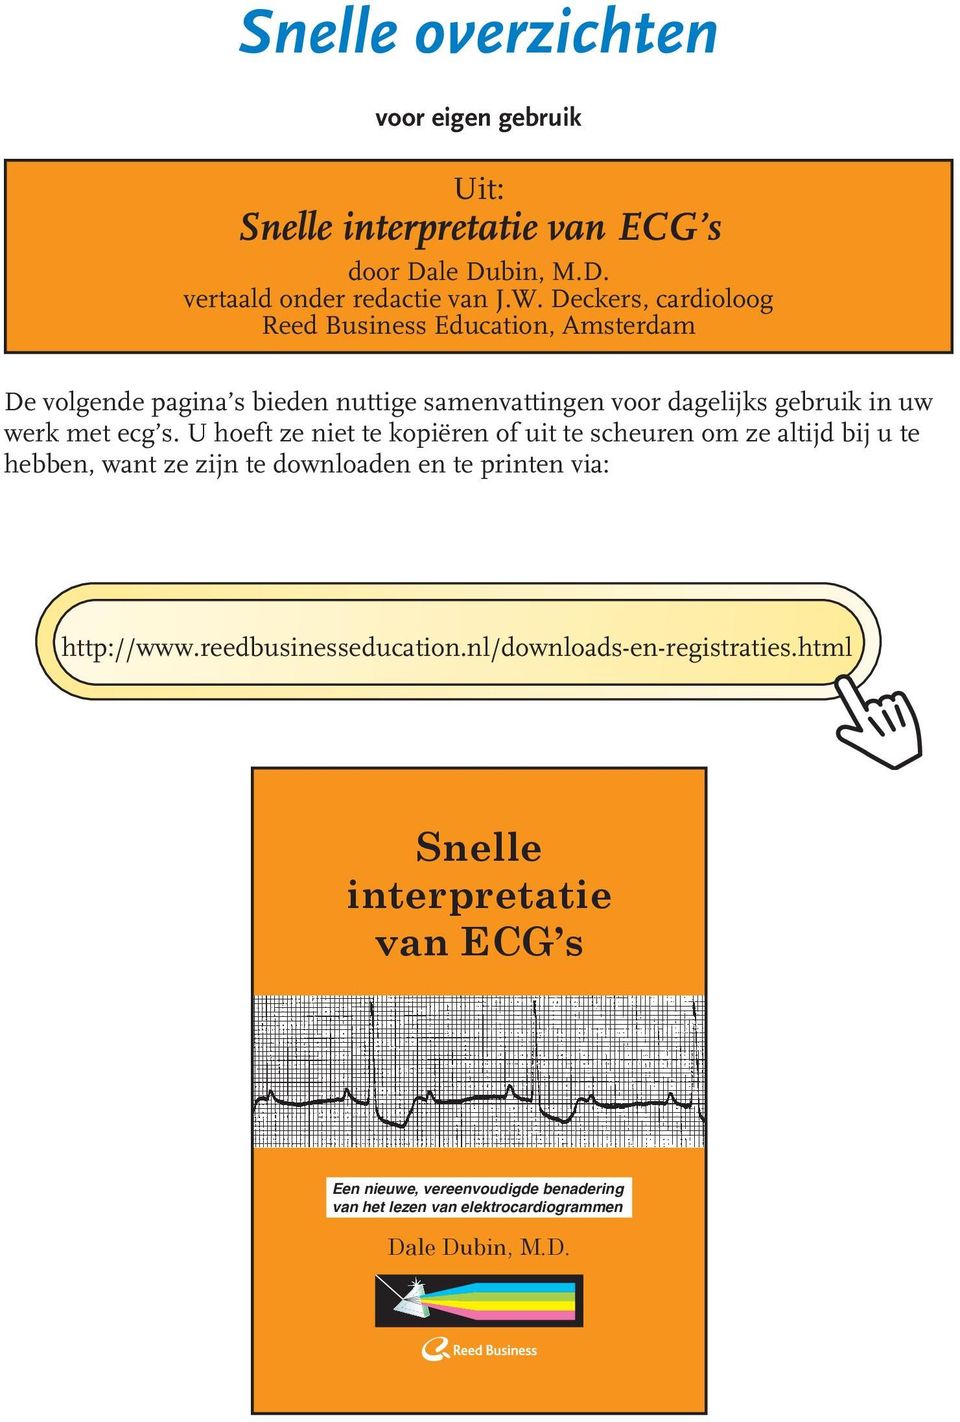 html elektrocardiogram is bij de diagnose en de behang van hartafwijkingen een belangrijk hulpmiddel.